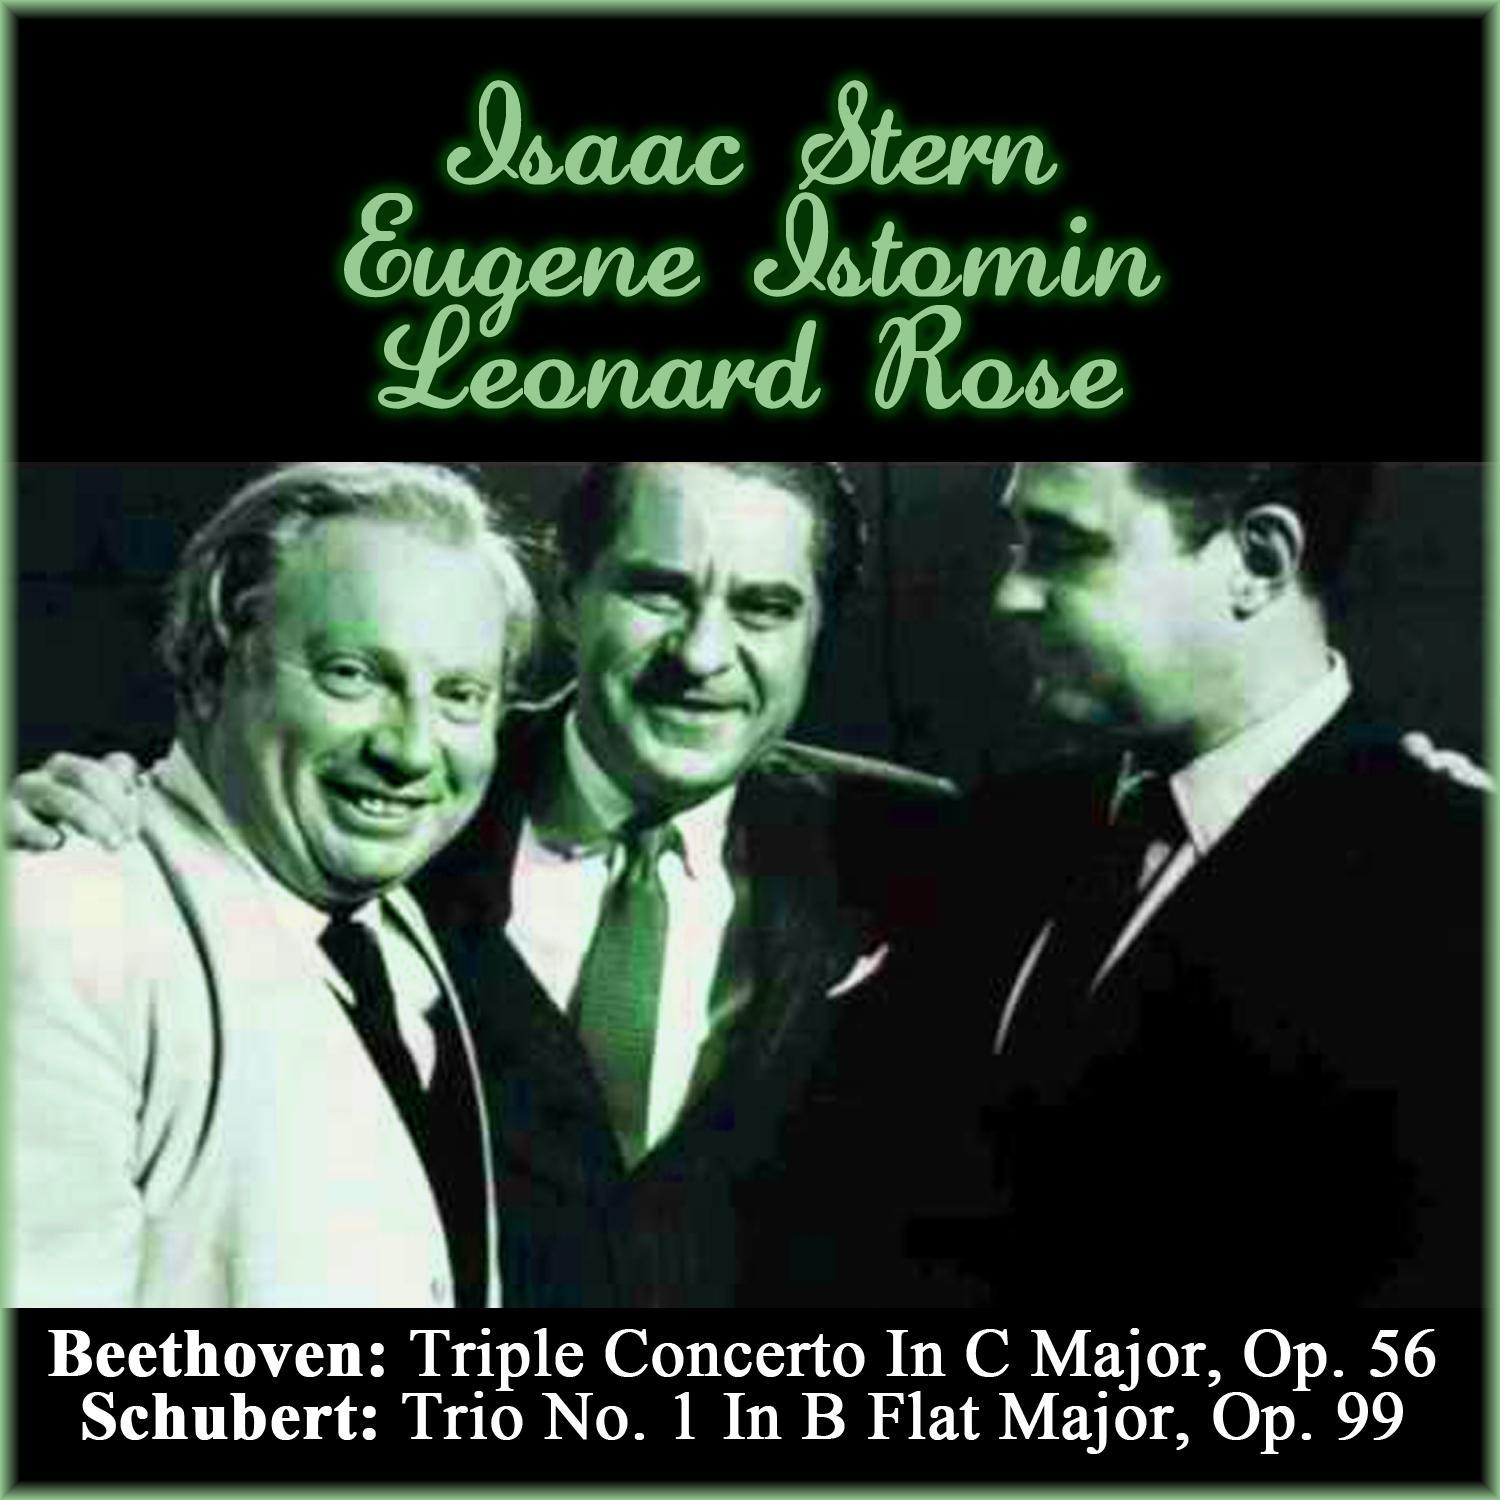 Beethoven: Triple Concerto In C Major, Op. 56 - Schubert: Trio No. 1 In B Flat Major, Op. 99